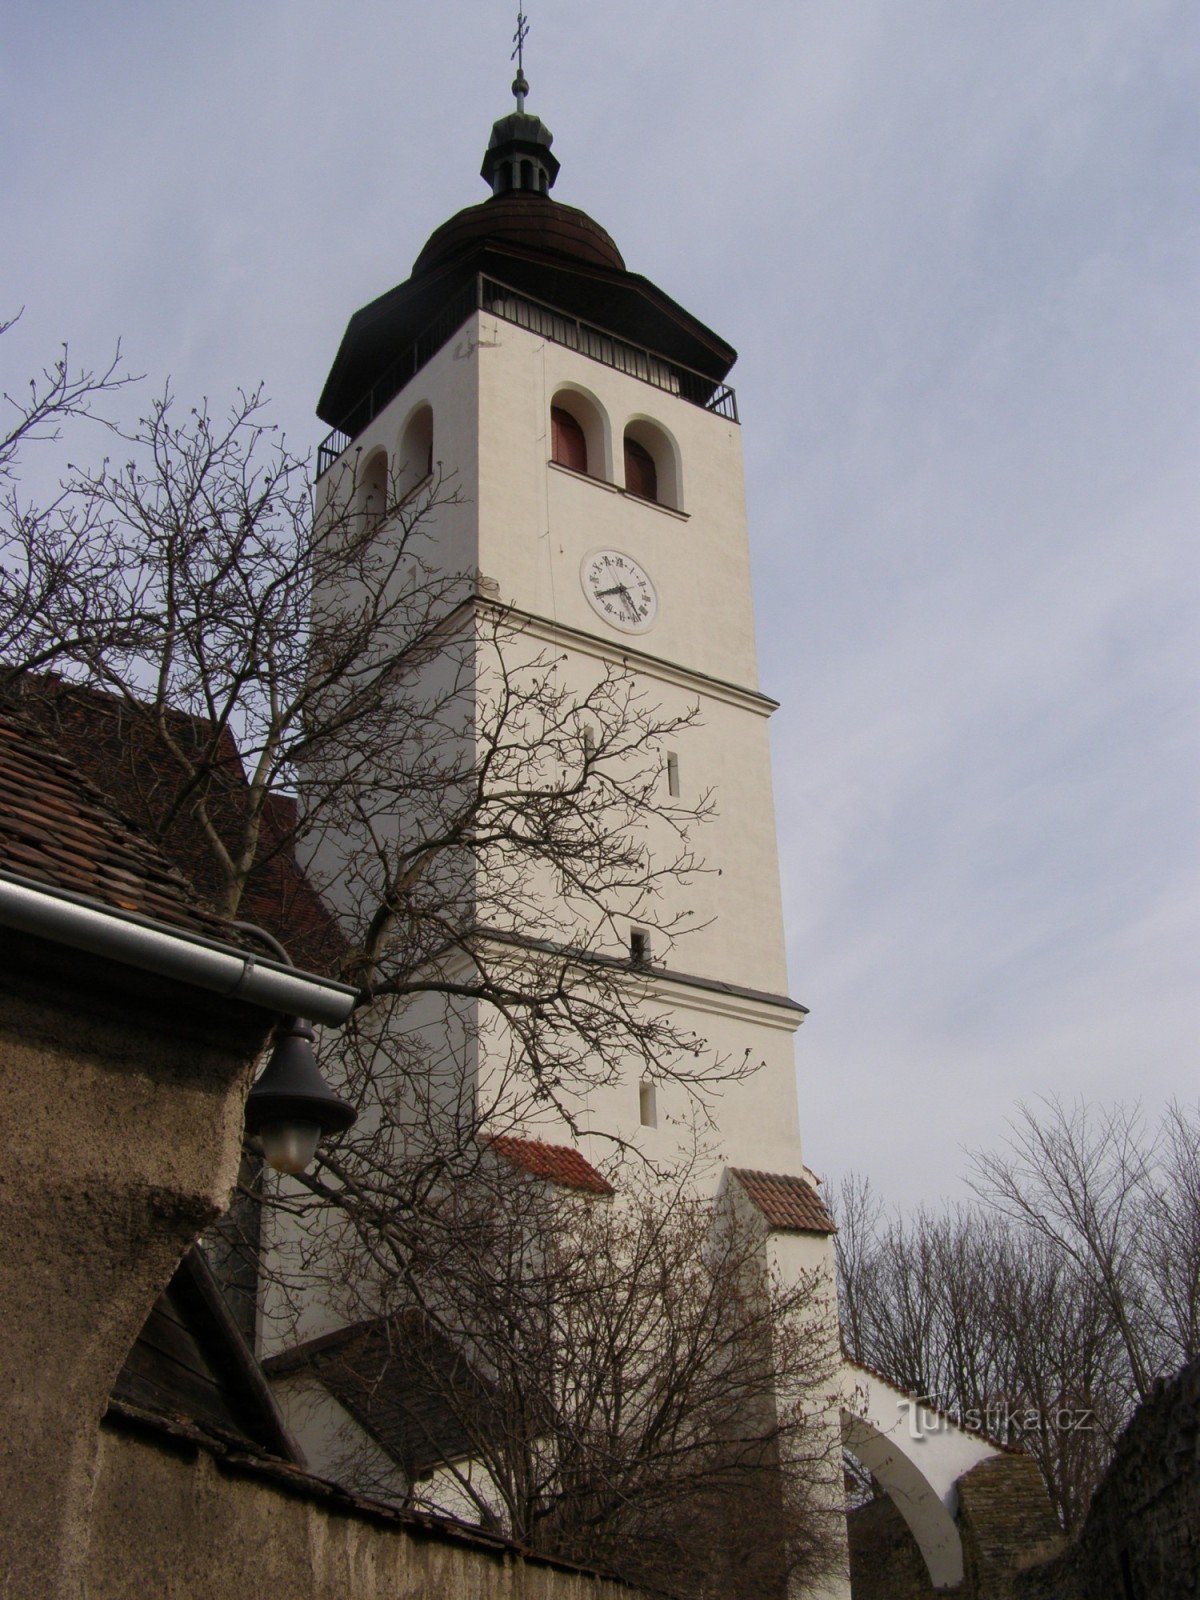 Nové Město nad Metují - Church of the Holy Trinity